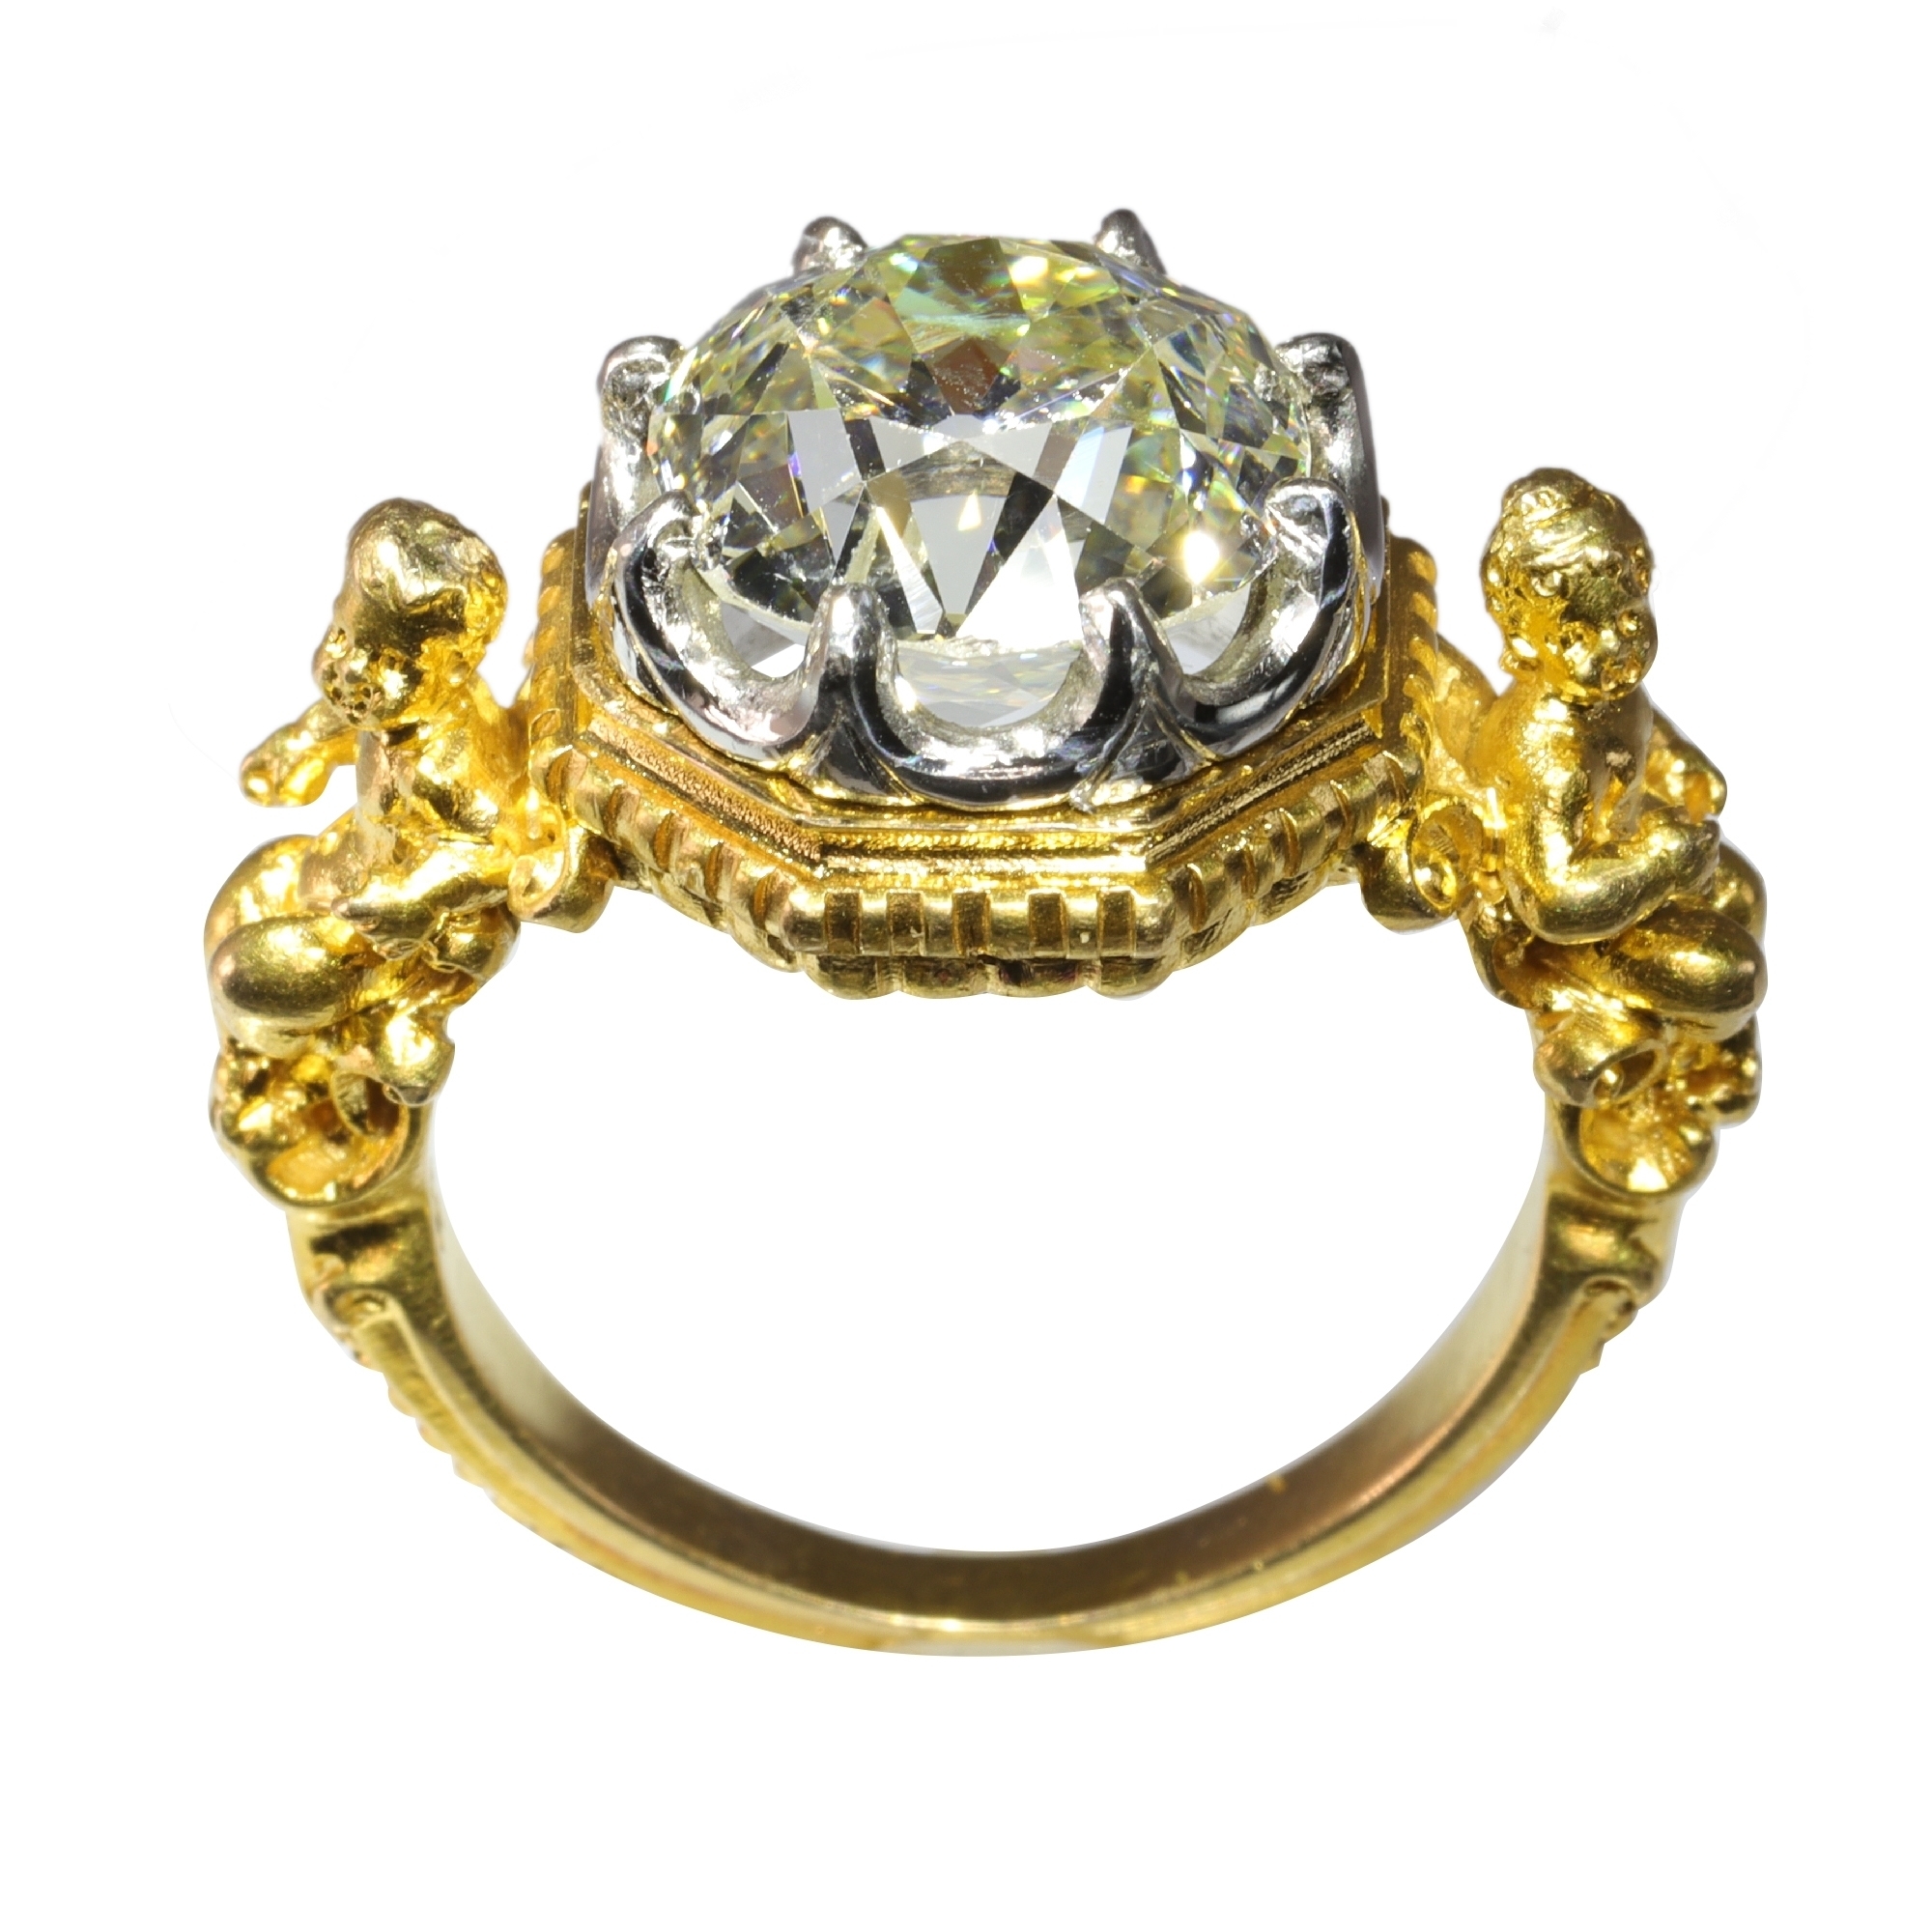 Chloe Diamonds: Flower-Inspired Engagement Ring | Ken & Dana Design